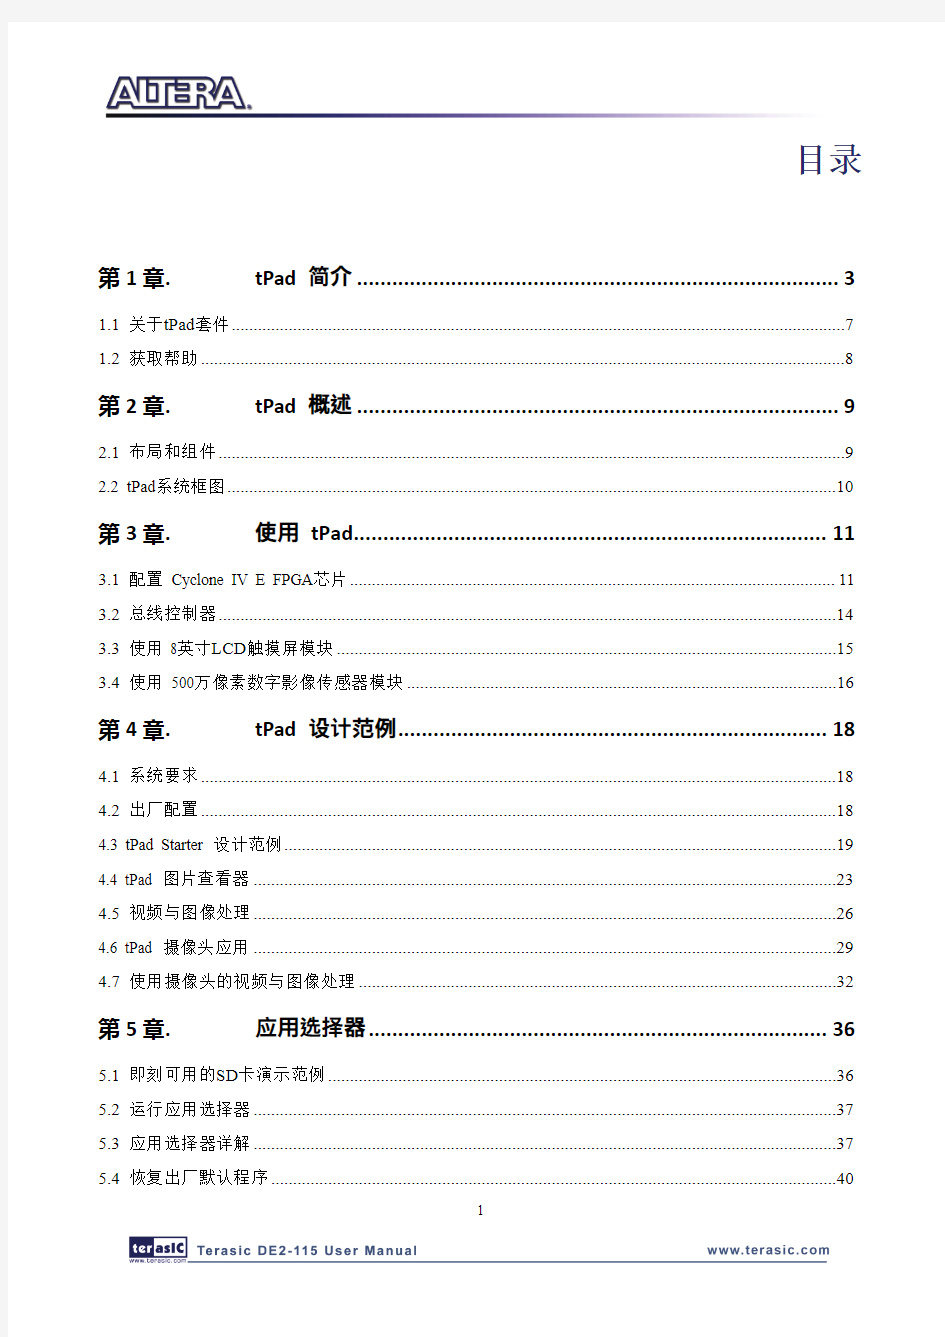 tPad中文使用手册